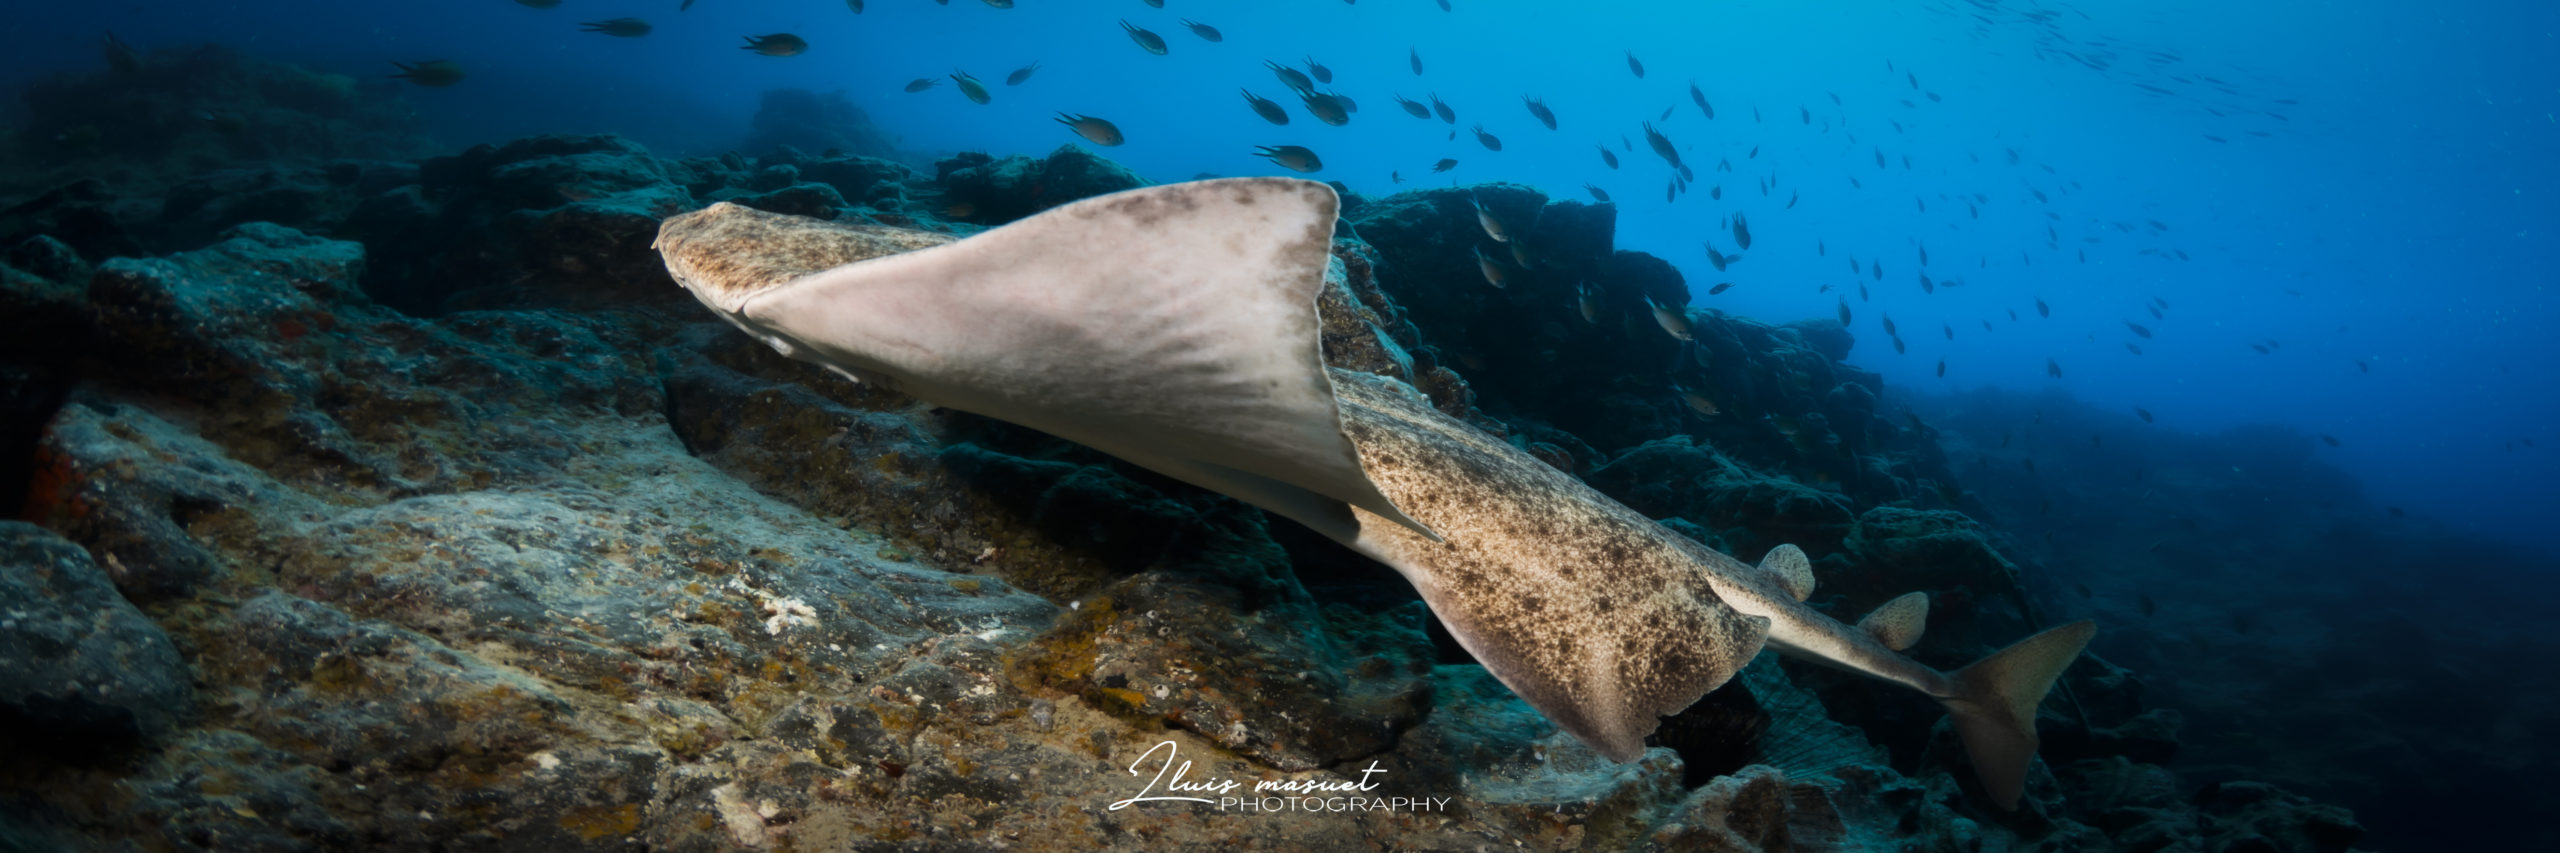 Fauna bajo el agua en Lanzarote